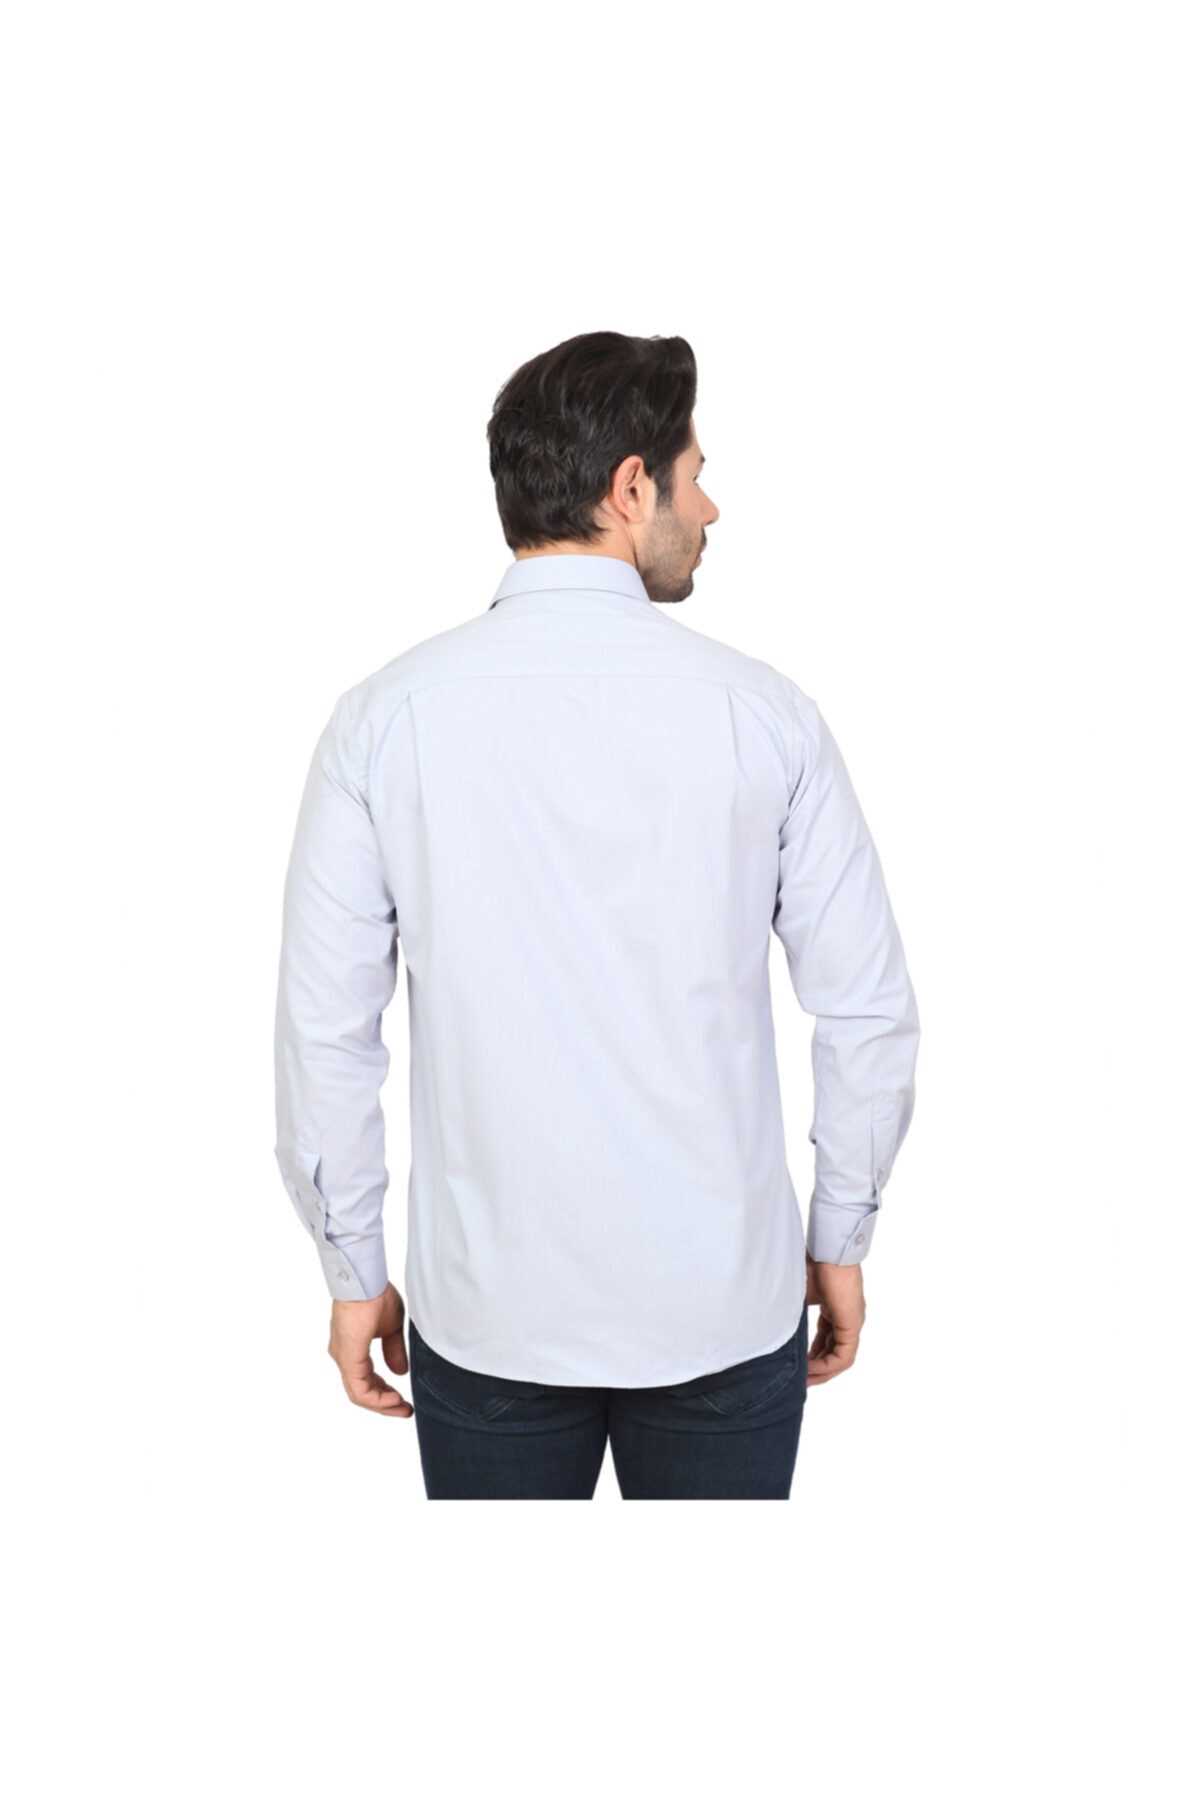 قیمت پیراهن مجلسی مردانه برند White Stone O.GRİ ty34728902